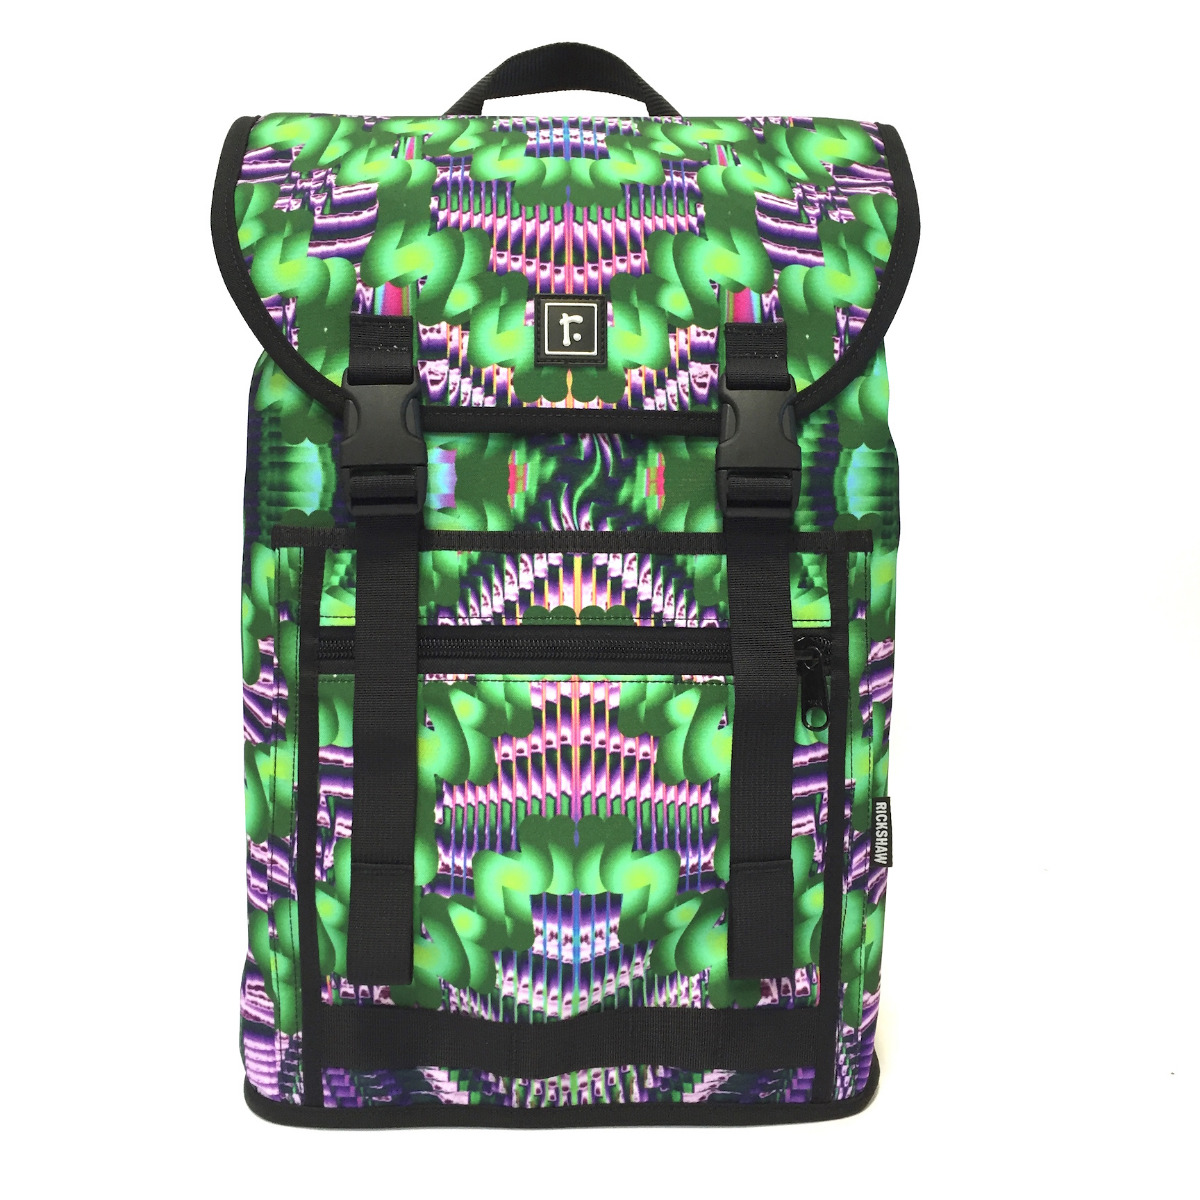 Backpacks - Bags